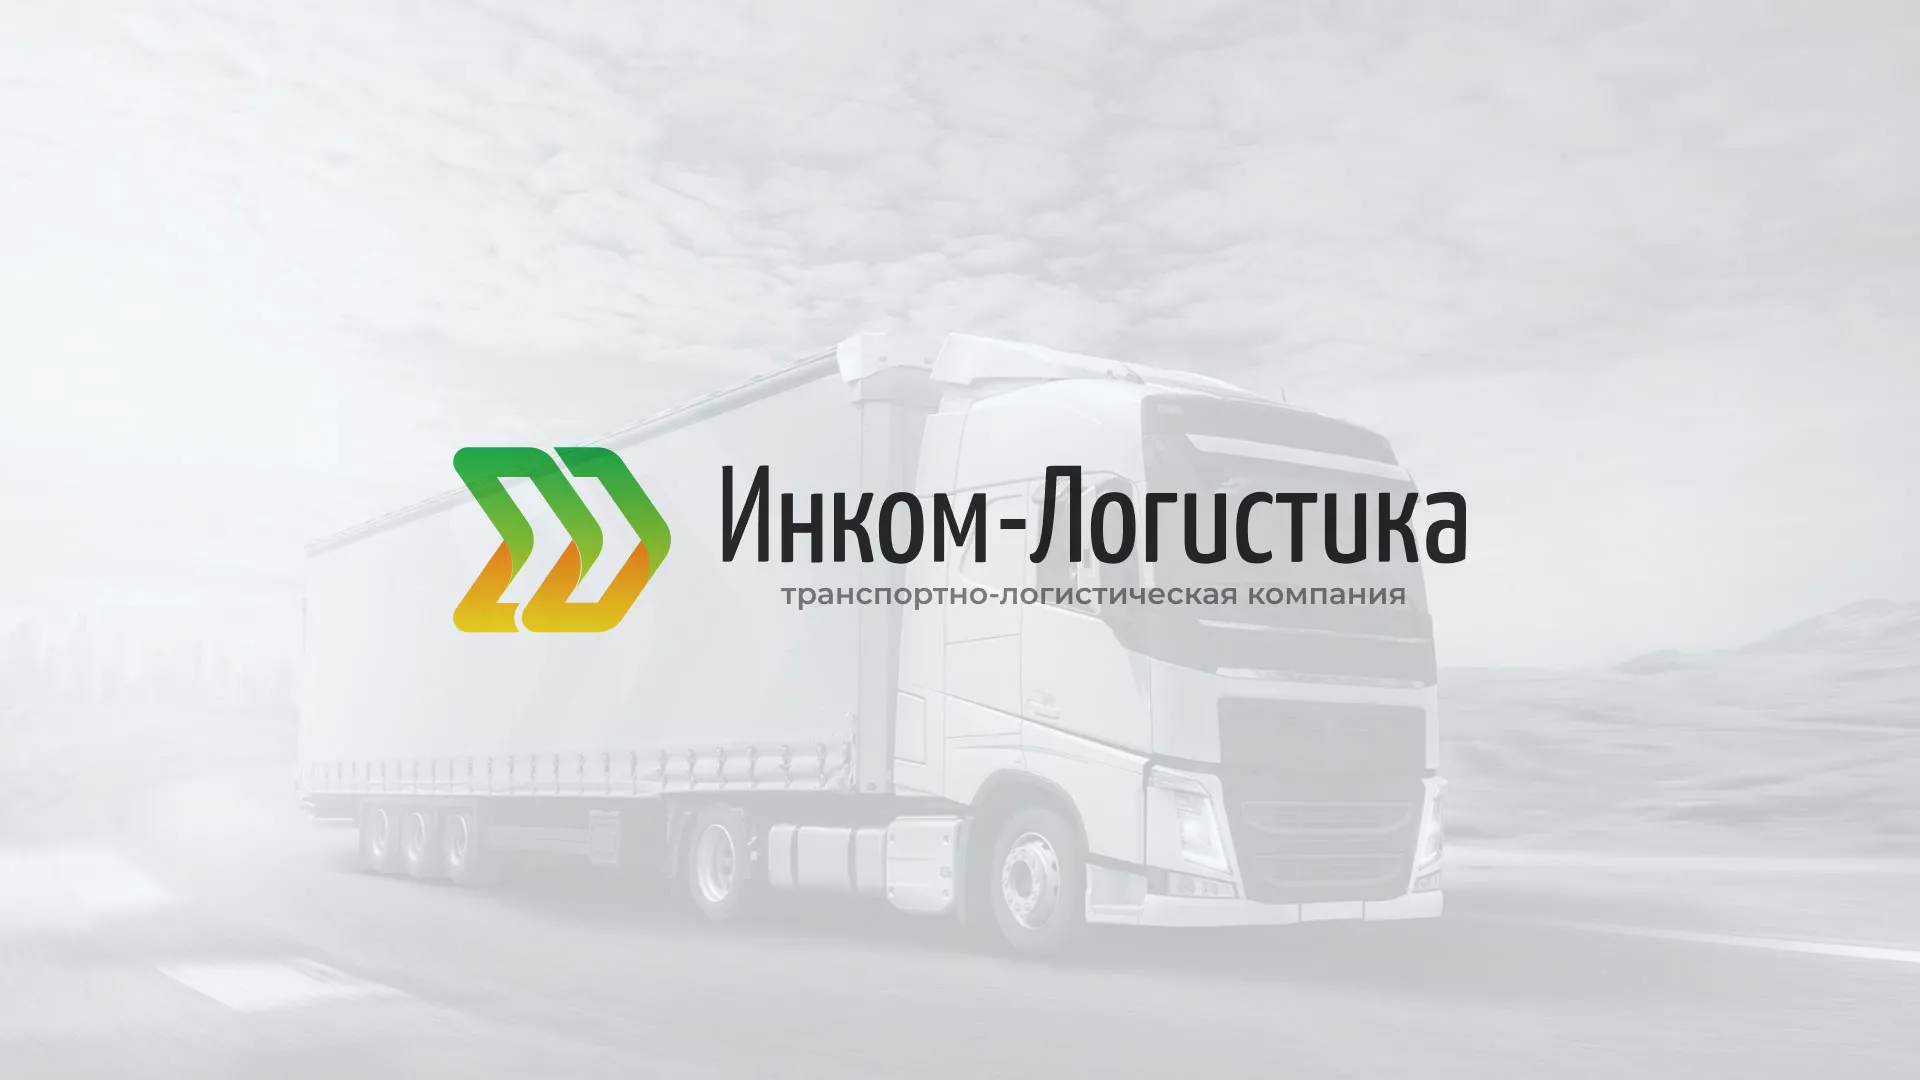 Разработка логотипа и сайта компании «Инком-Логистика» в Юрьев-Польском